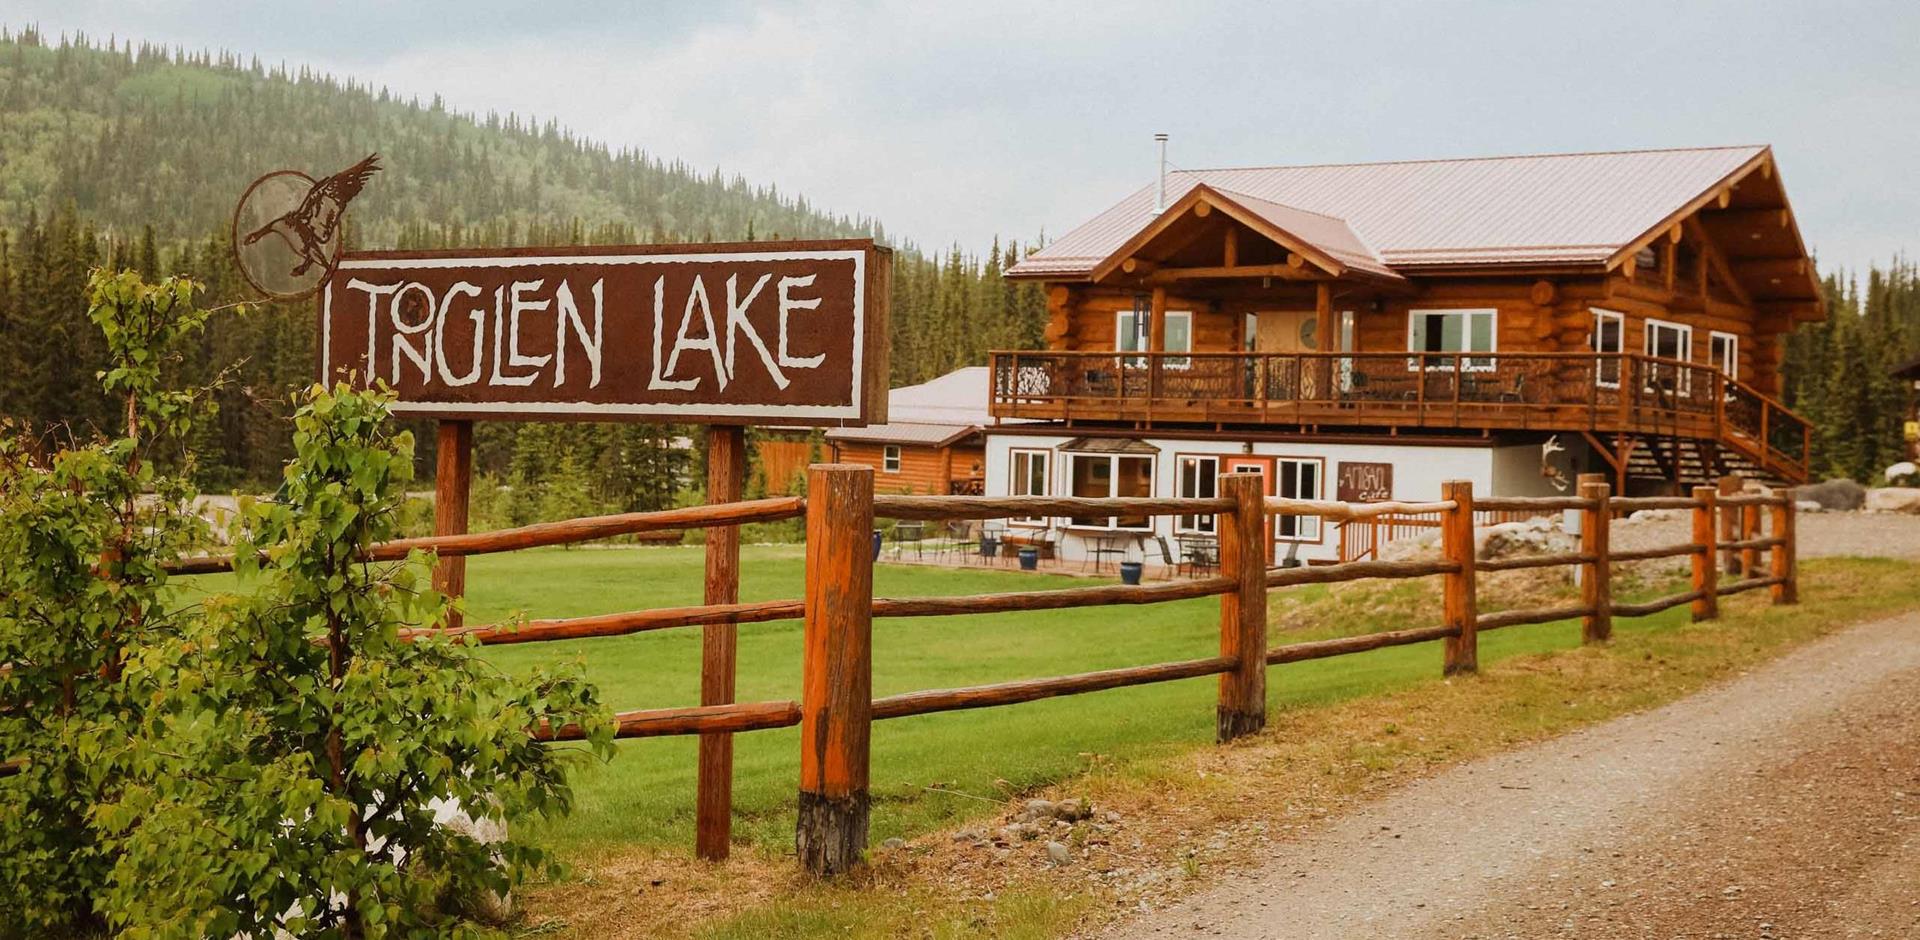 Tonglen Lake Lodge, Alaska